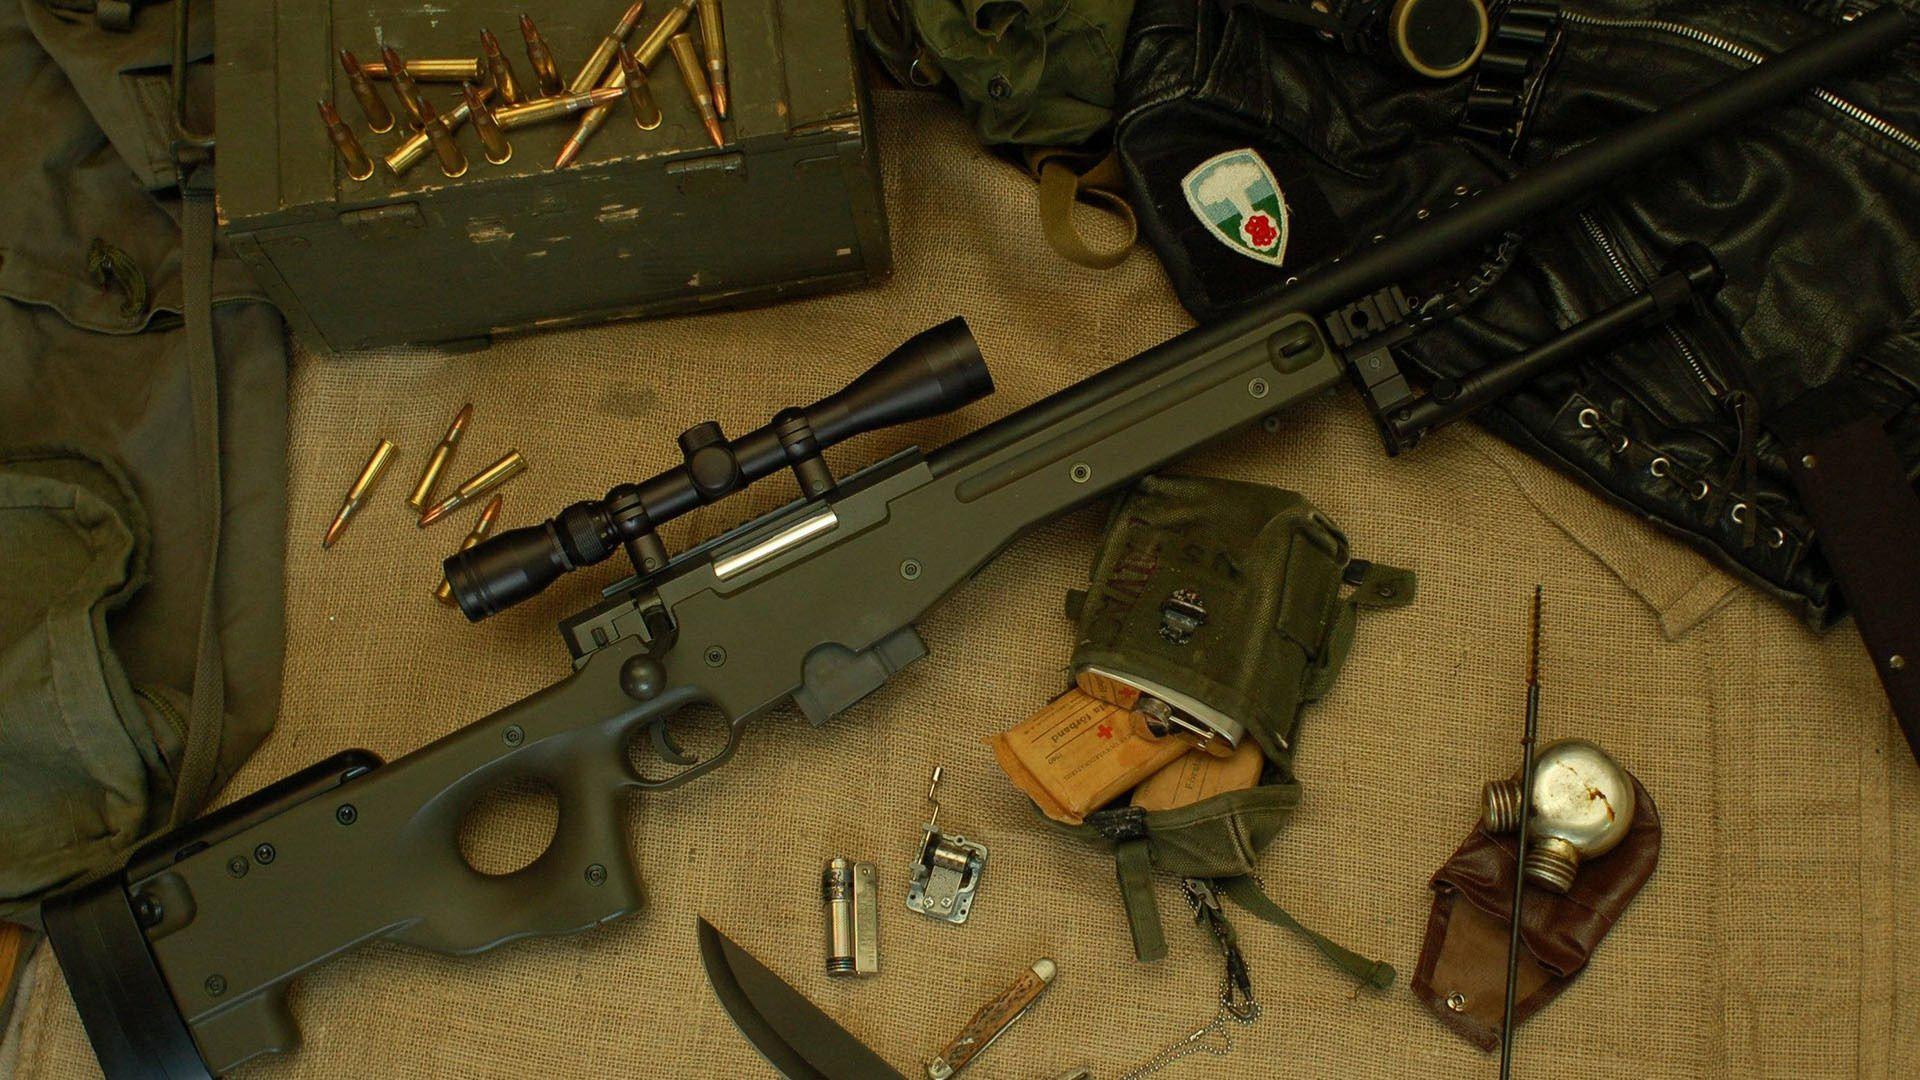 军事天地 冲锋枪 MP5 十月十一日壁纸(其他静态壁纸) - 静态壁纸下载 - 元气壁纸